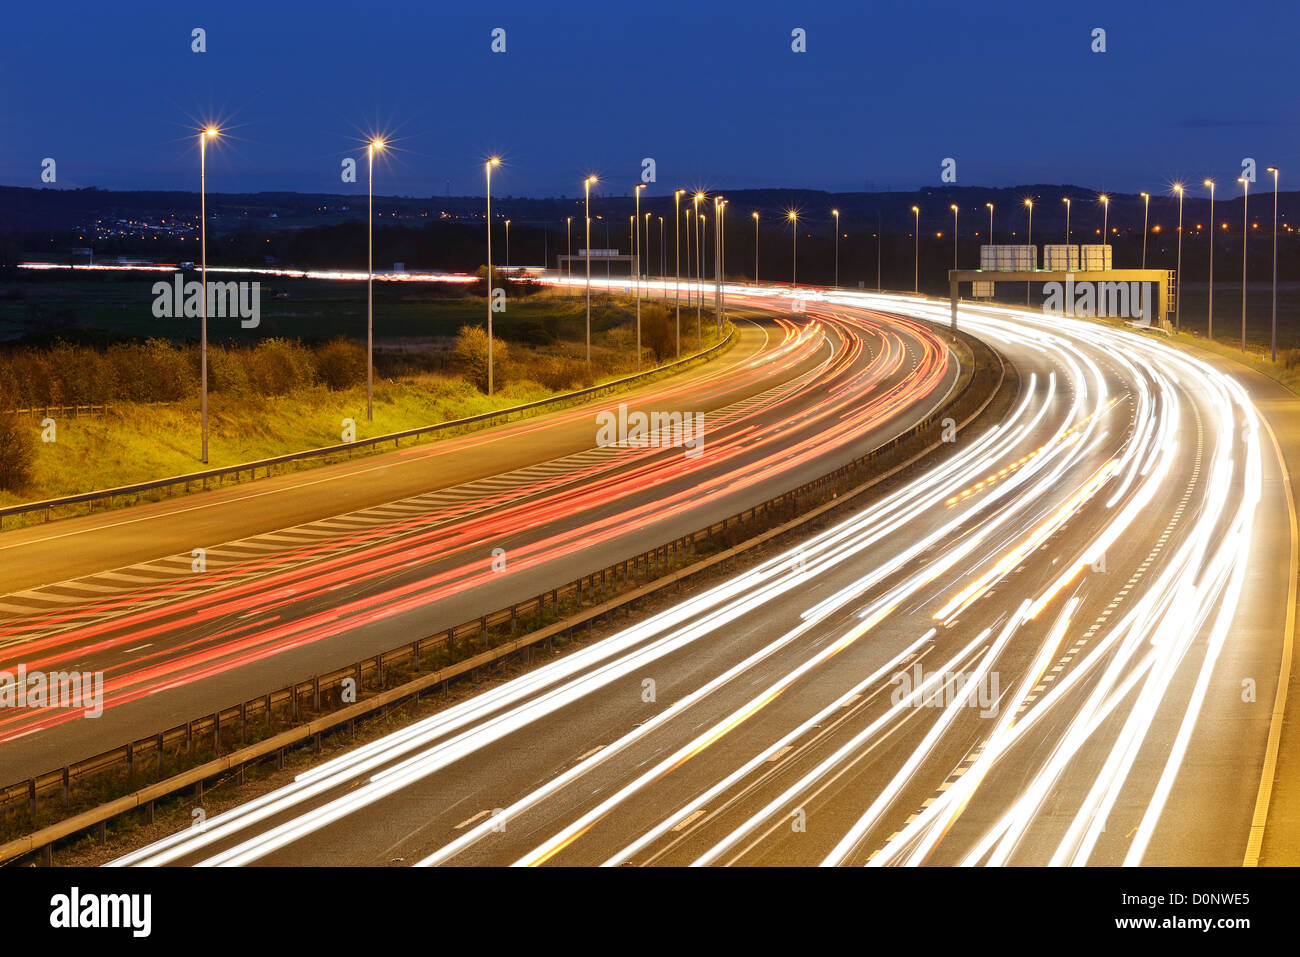 Night traffic on the M56 motorway Cheshire UK Stock Photo